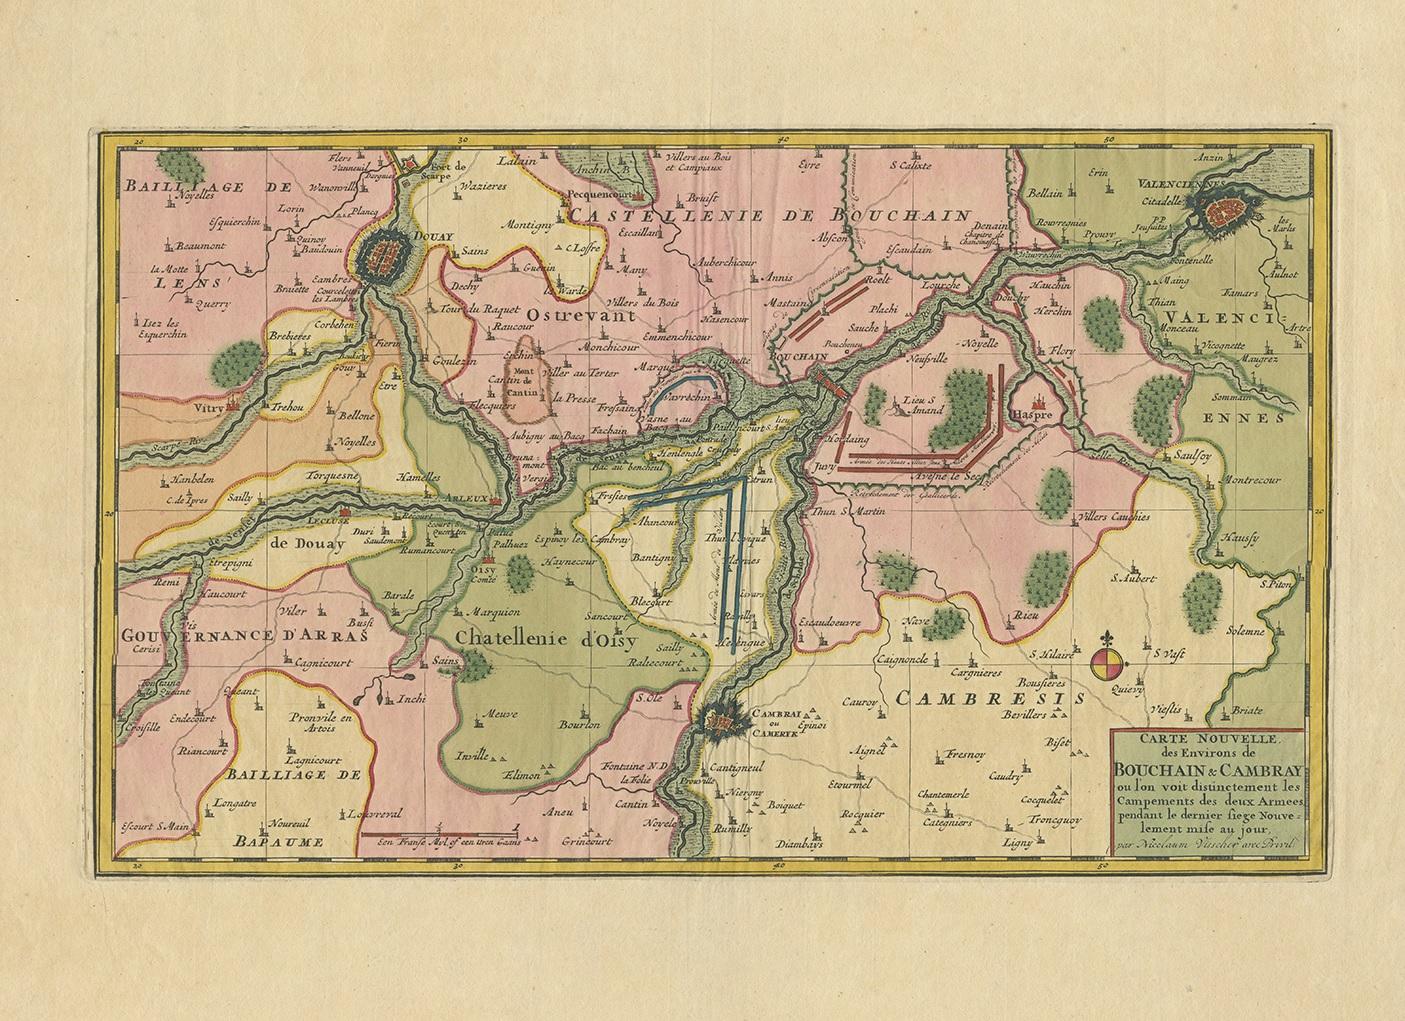 Carte ancienne intitulée 'Carte Nouvelle des Environs de Bouchain & Cambray'. Carte peu commune de la région de Bouchain et Cambrai (Cambray, France) montrant les camps de deux armées.